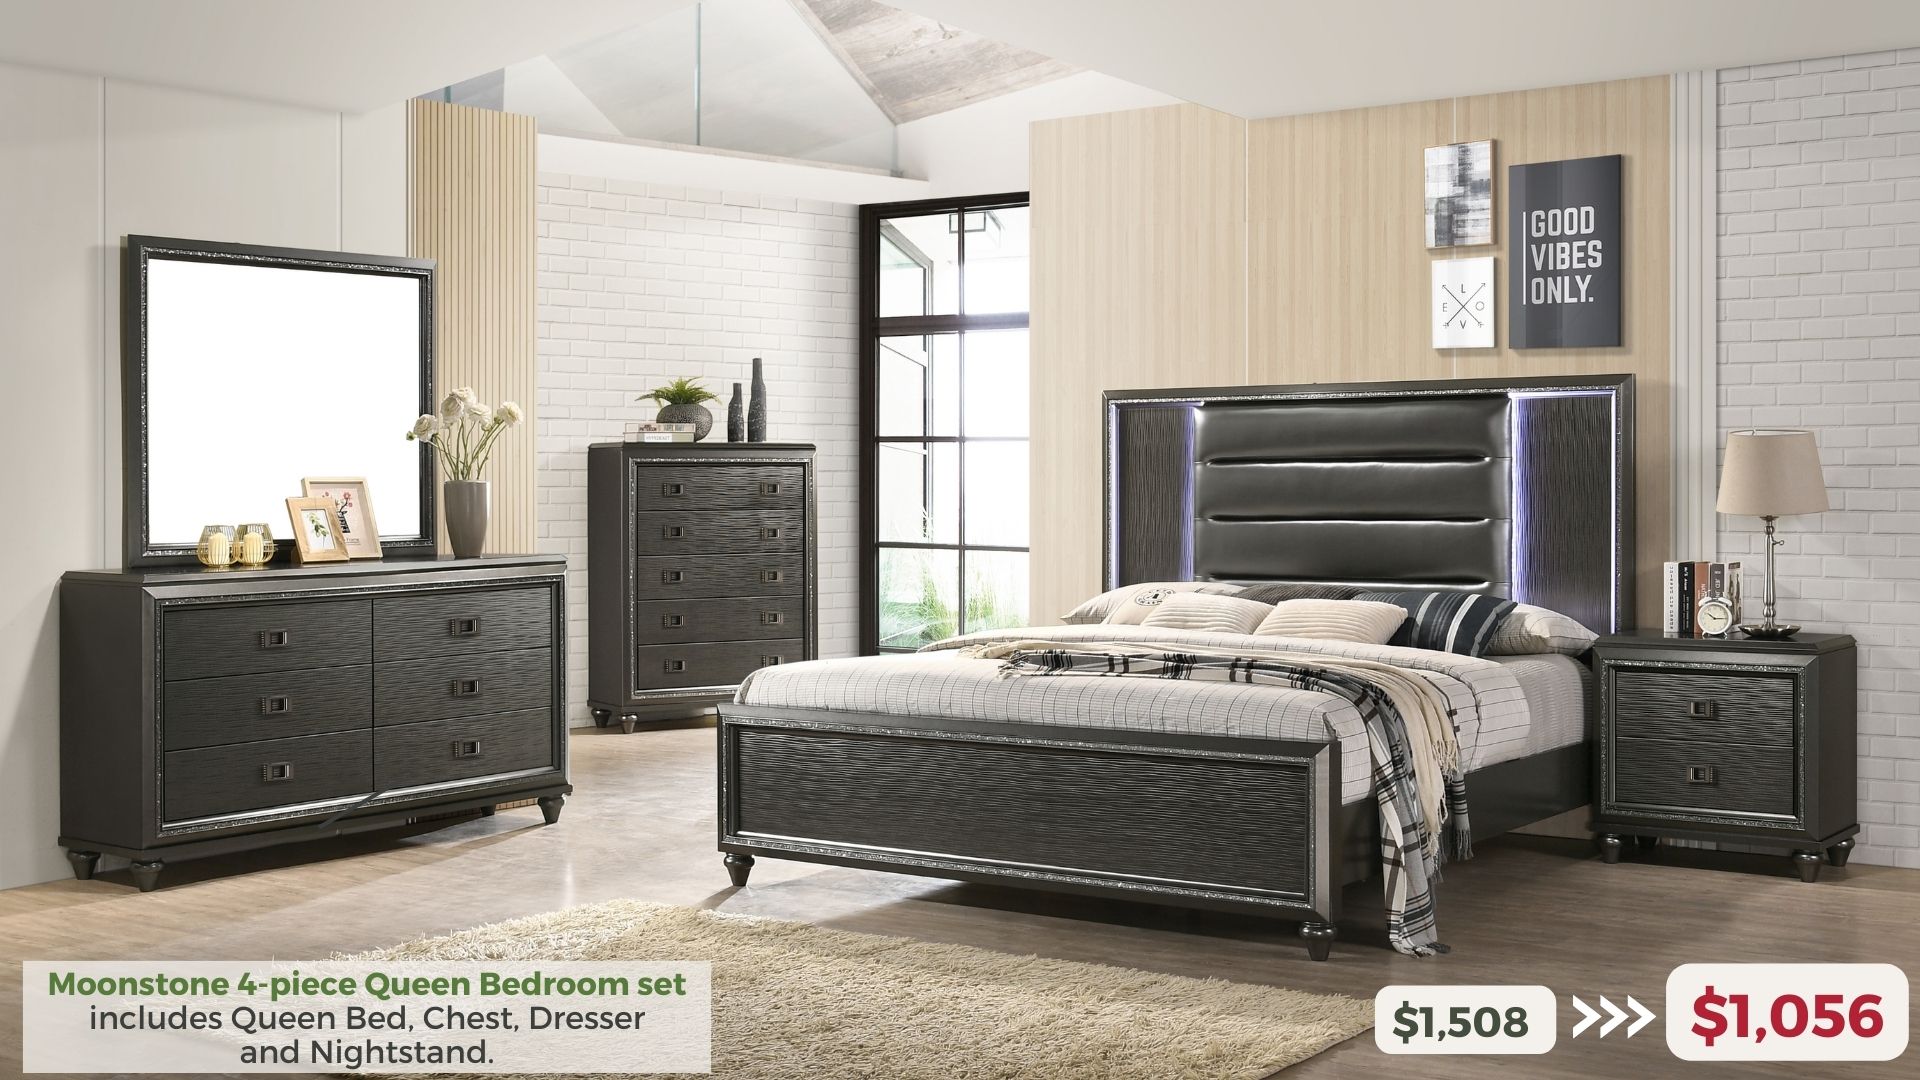 Moonstone 4-piece Queen Bedroom Set includes Queen Bed, Chest, Dresser and Nightstand. $1,056